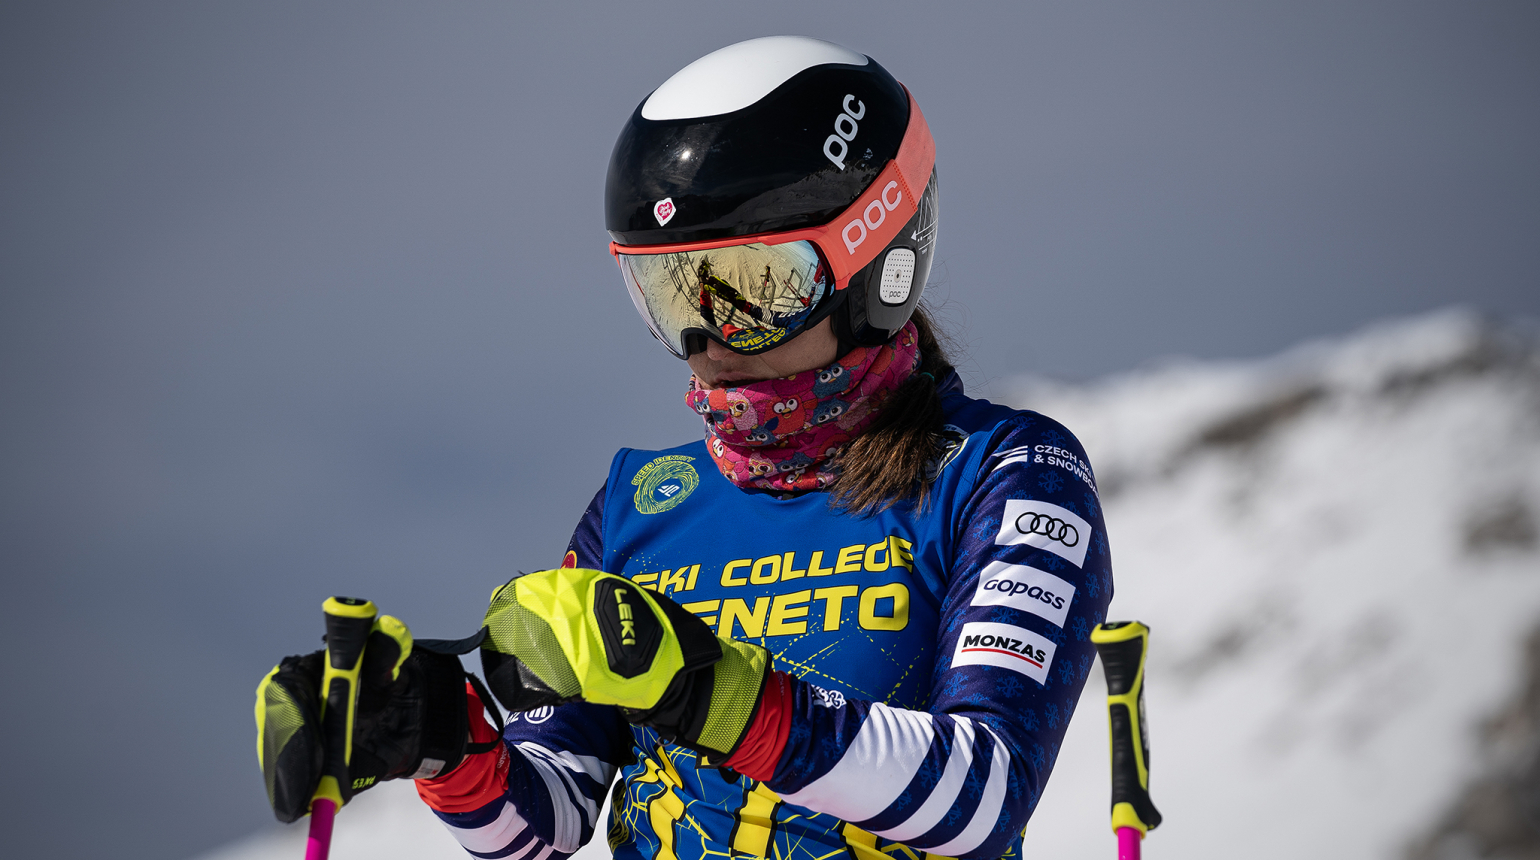 Itálie se stala dějištěm EP skicrossu s bohatou českou účastí